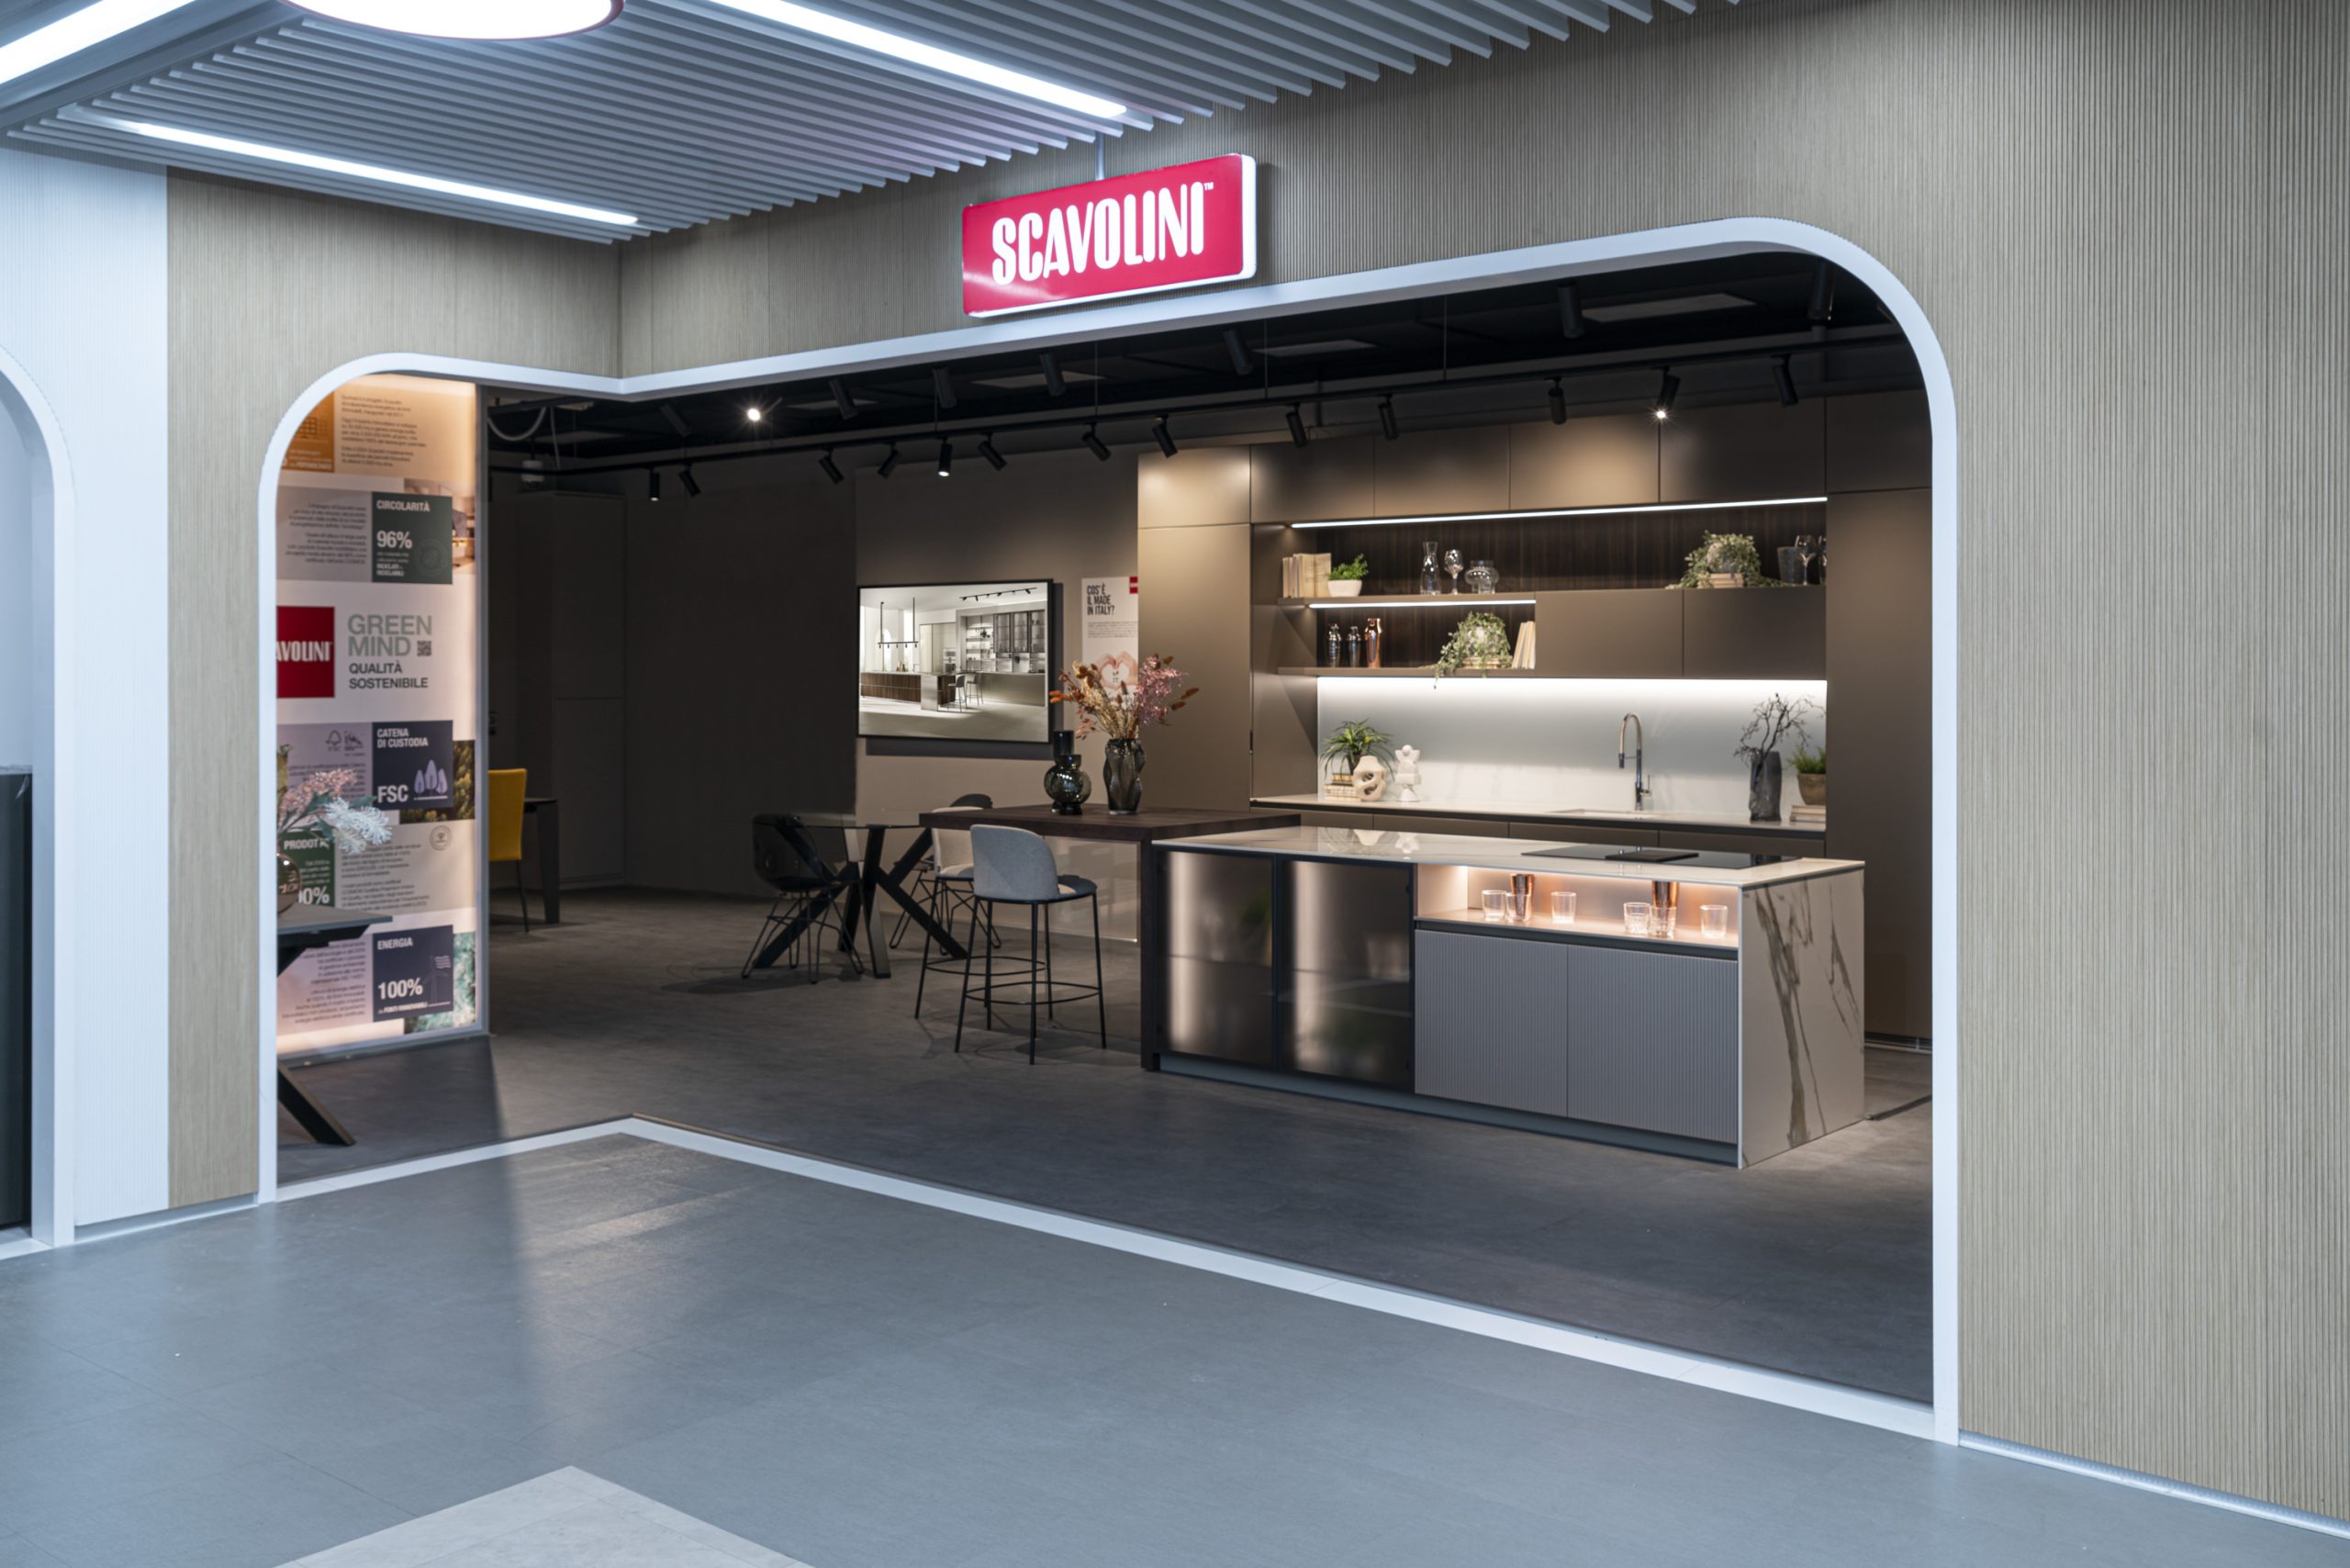 Scavolini propone le sue cucine negli spazi del Mediaworld Milano-Certosa